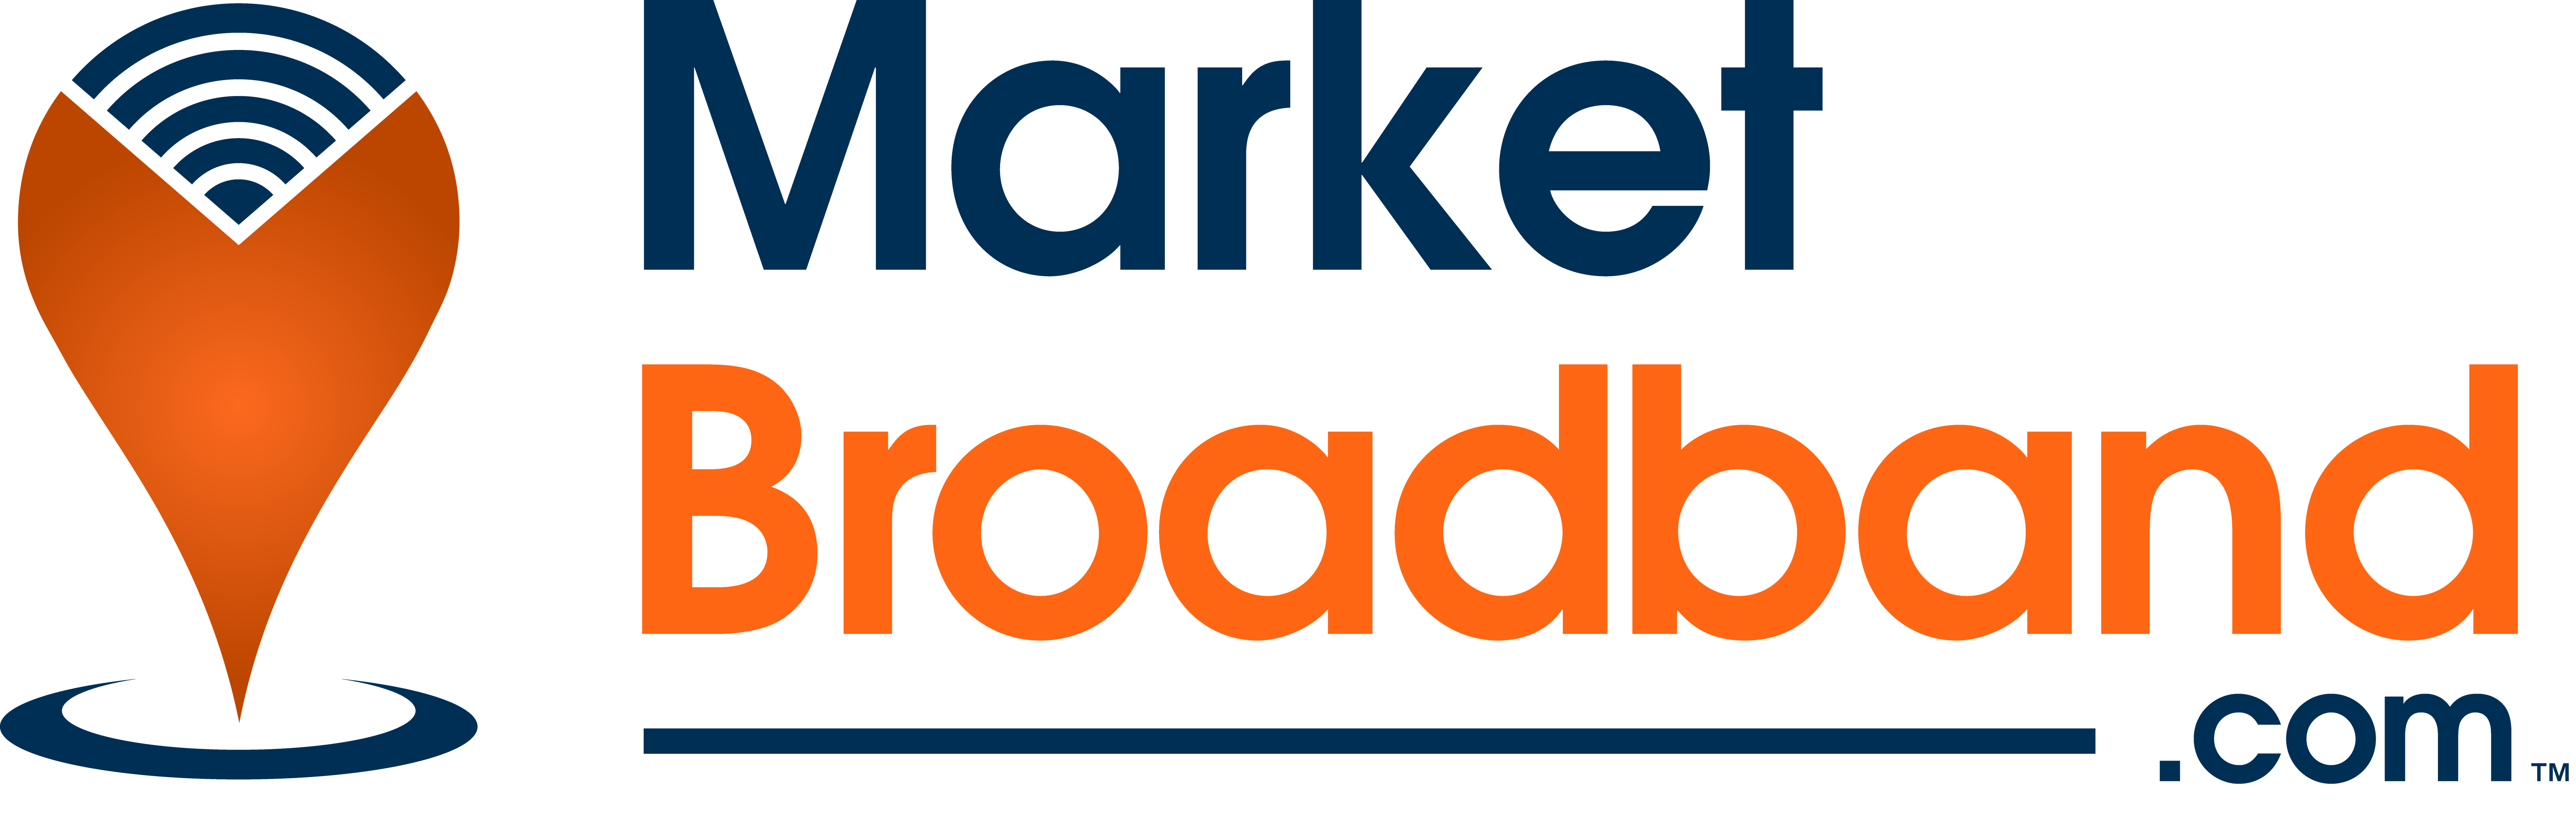 MarketBroadband